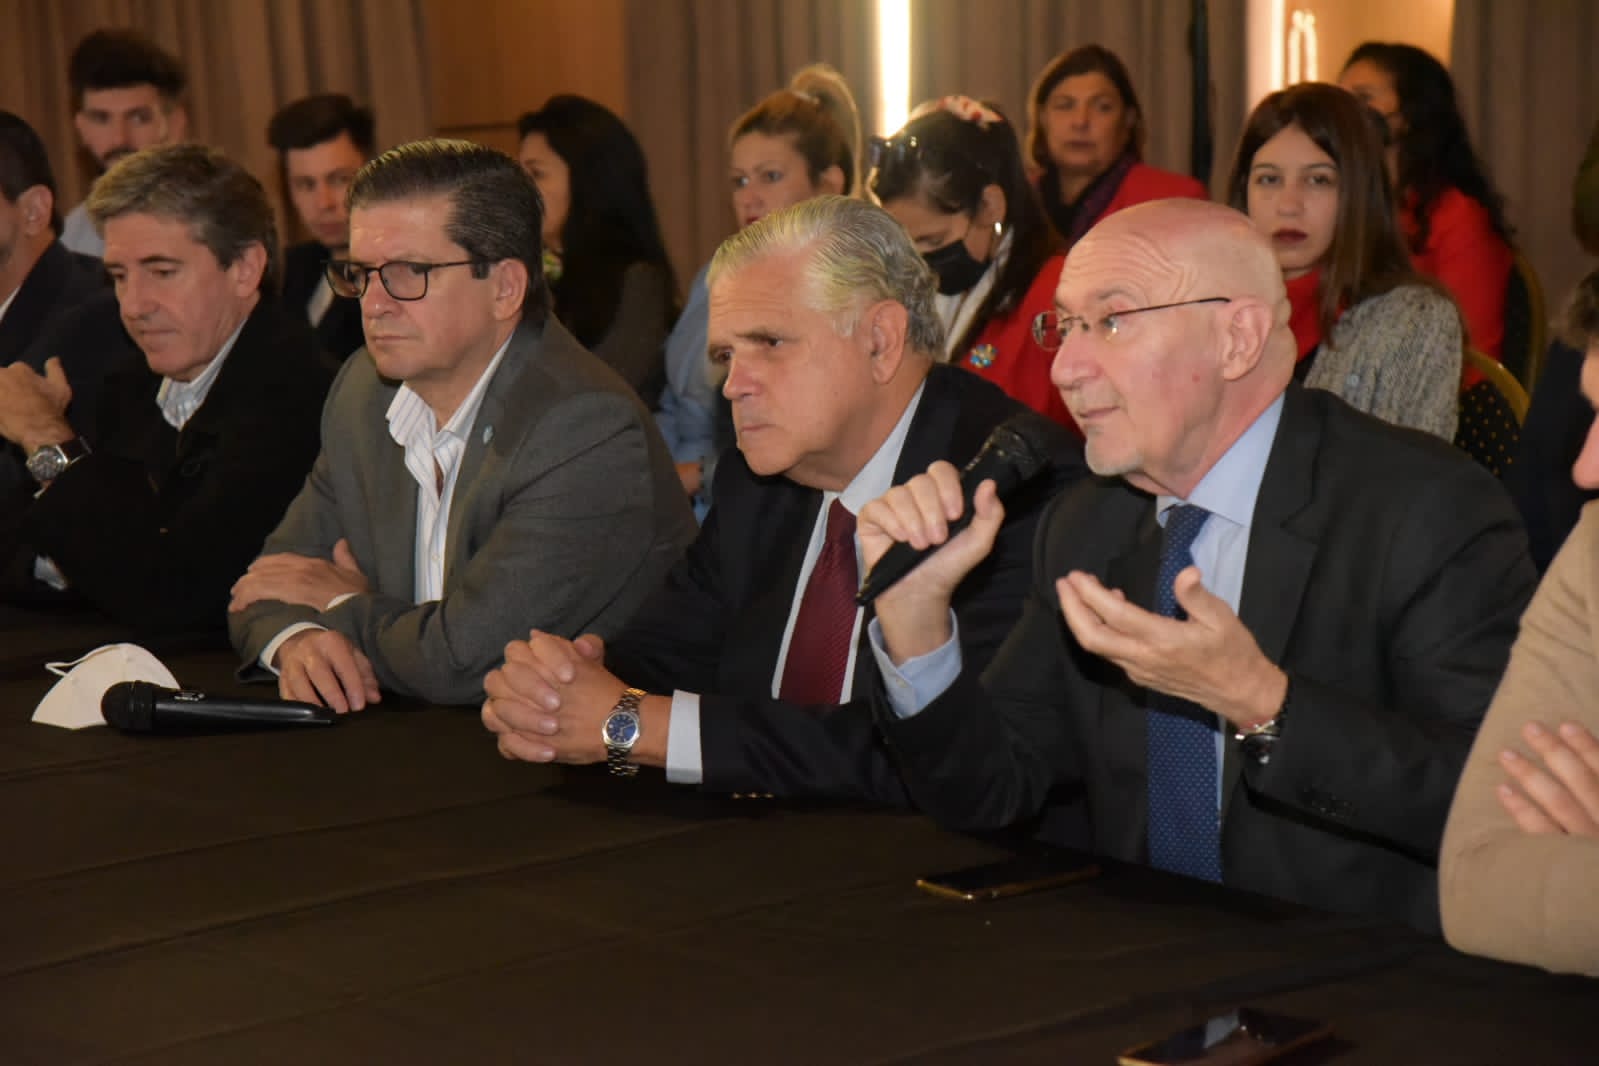 El diputado Ricardo López Murphy presentó en Corrientes el "Acuerdo Federal", un espacio liberal y republicano junto a partidos provinciales alineados con Juntos por el Cambio